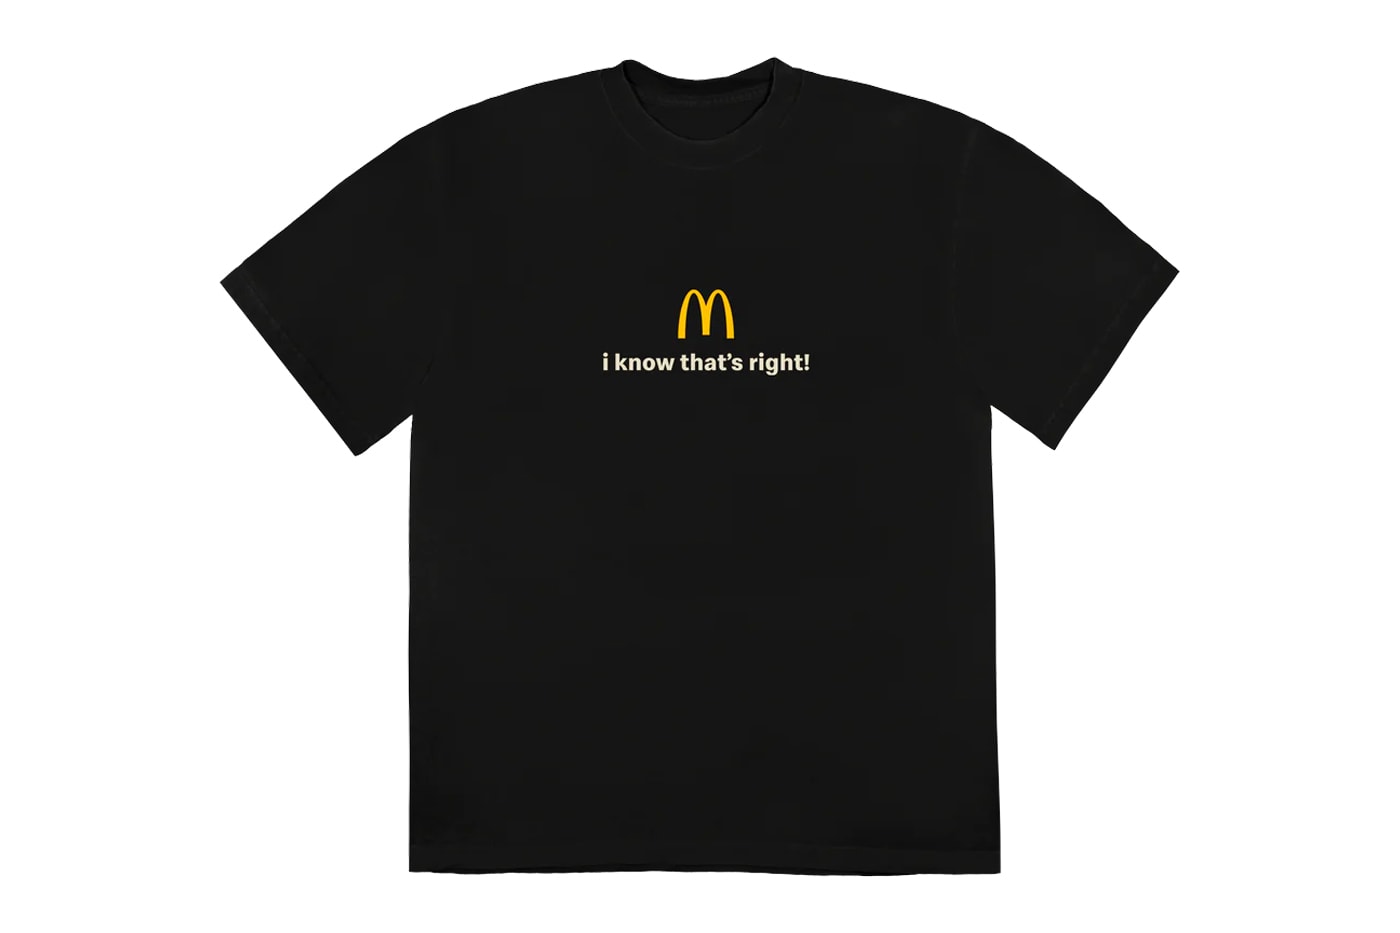 マクドナルド x カーディ・B & オフセット夫婦のコラボミールを記念したマーチコレクションが登場 McDonald's Cardi B & Offset Meal Merch Collection Release Info